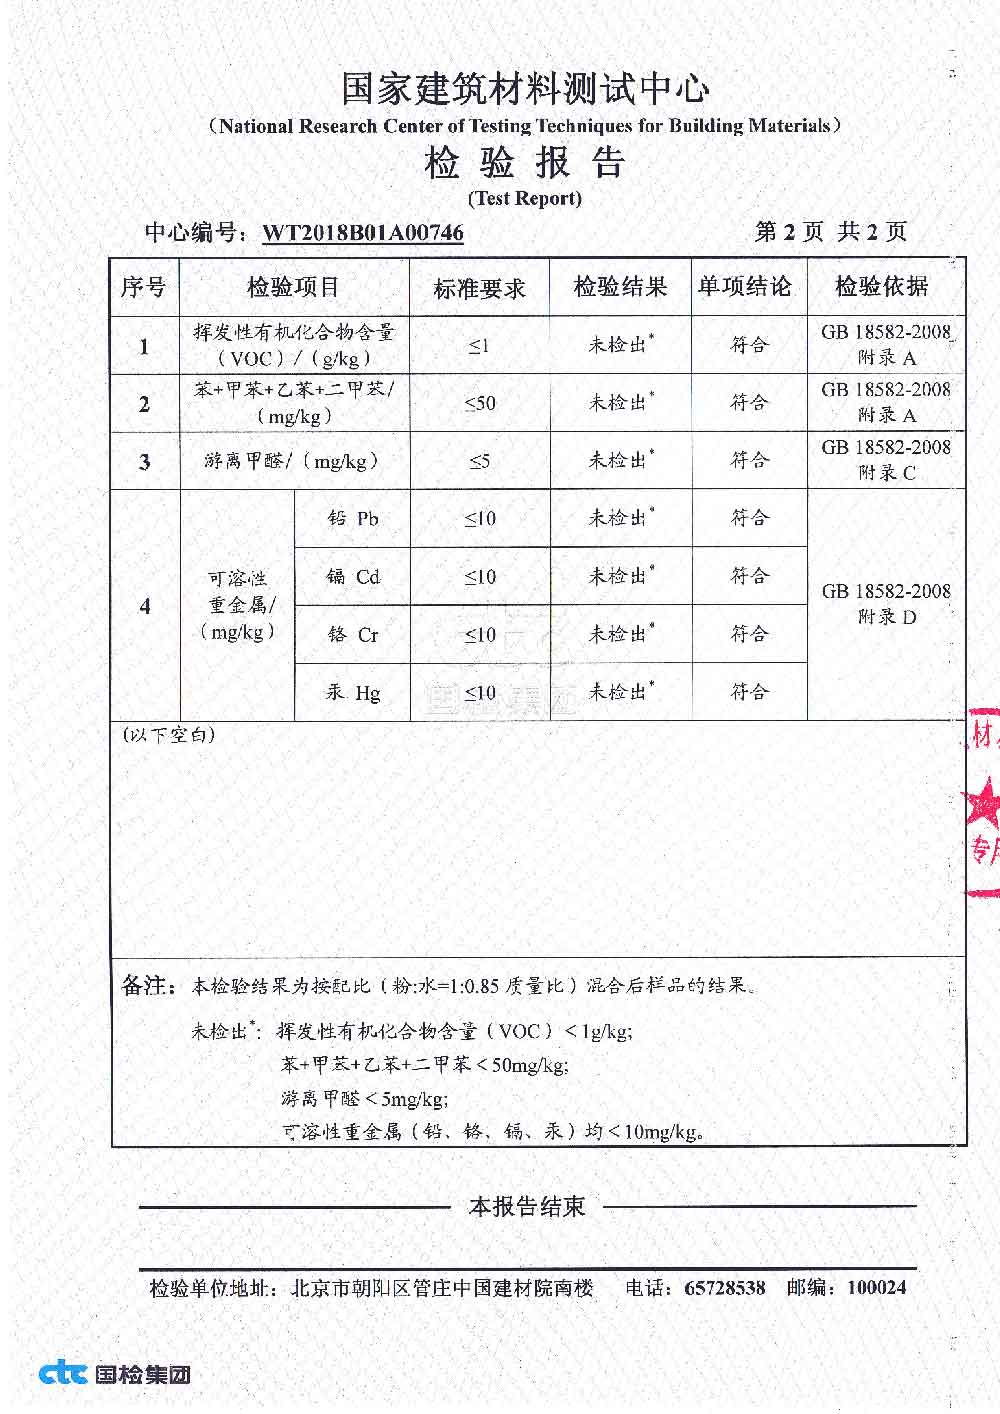 企业详情- 国检测试控股集团北京有限公司